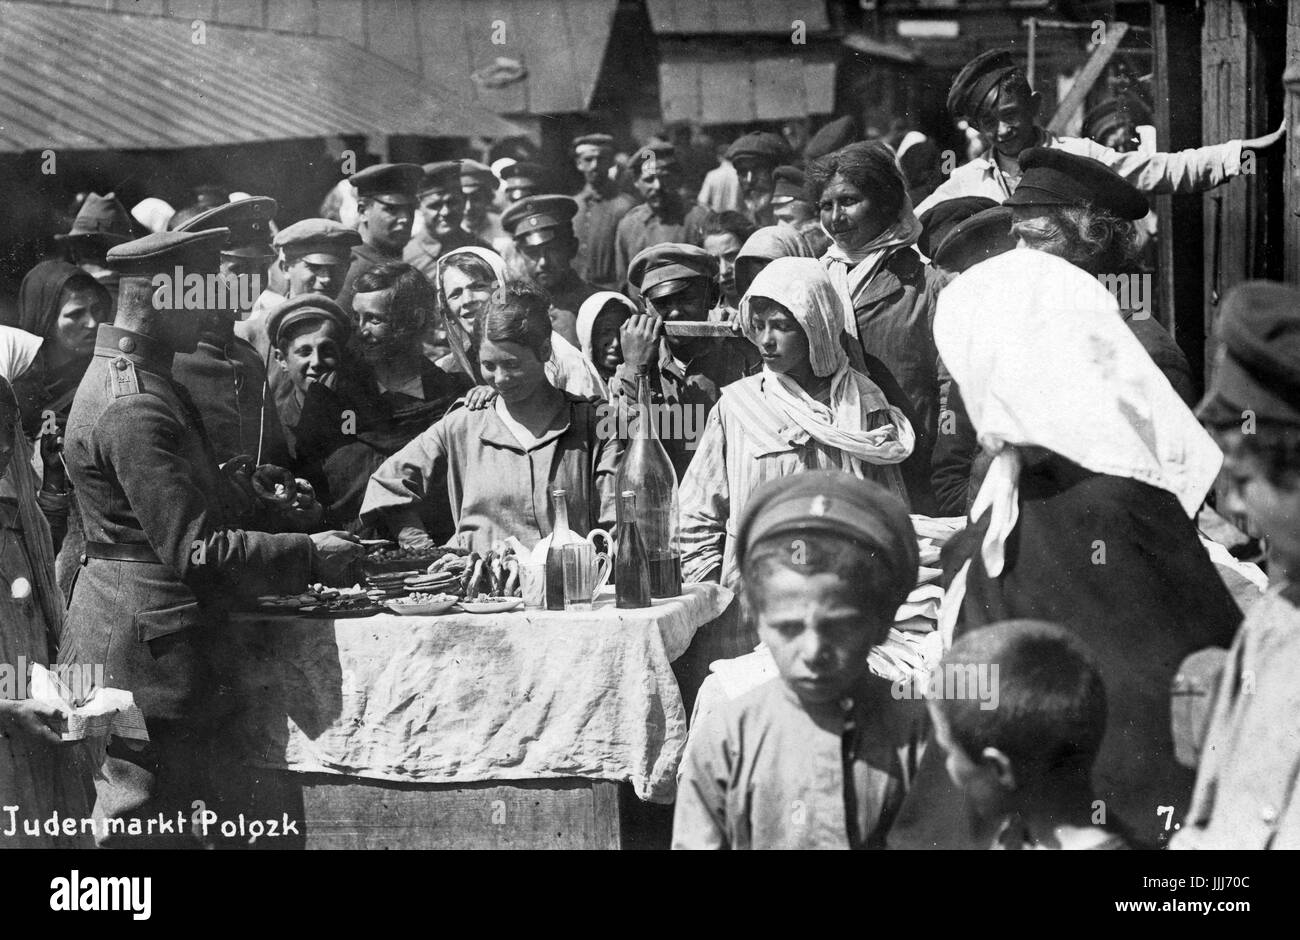 Les soldats allemands marché juif visite au Bélarus à Polotsk (Polatsk) dans la région de Vitebsk. ( Communauté Juive mentionnée en premier lieu dans cette ville en 1551. ) Sous-titre suivant 'Judenmarkt Polozk'. 1915-1918 Banque D'Images